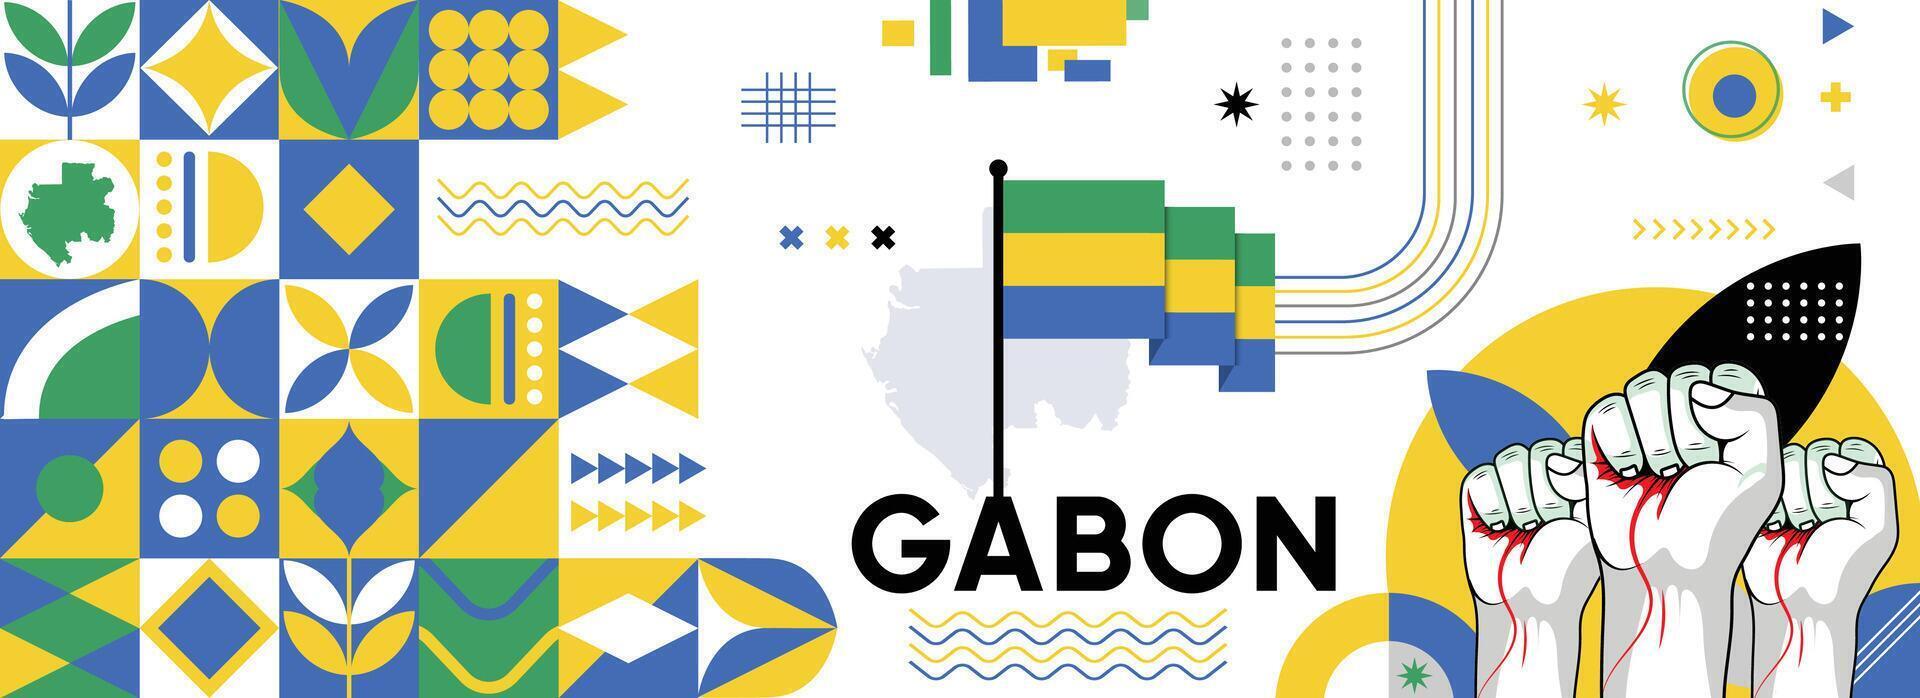 Gabon nazionale o indipendenza giorno bandiera per nazione celebrazione. bandiera e carta geografica di Gabon con sollevato pugni. moderno retrò design con typorgaphy astratto geometrico icone. vettore illustrazione